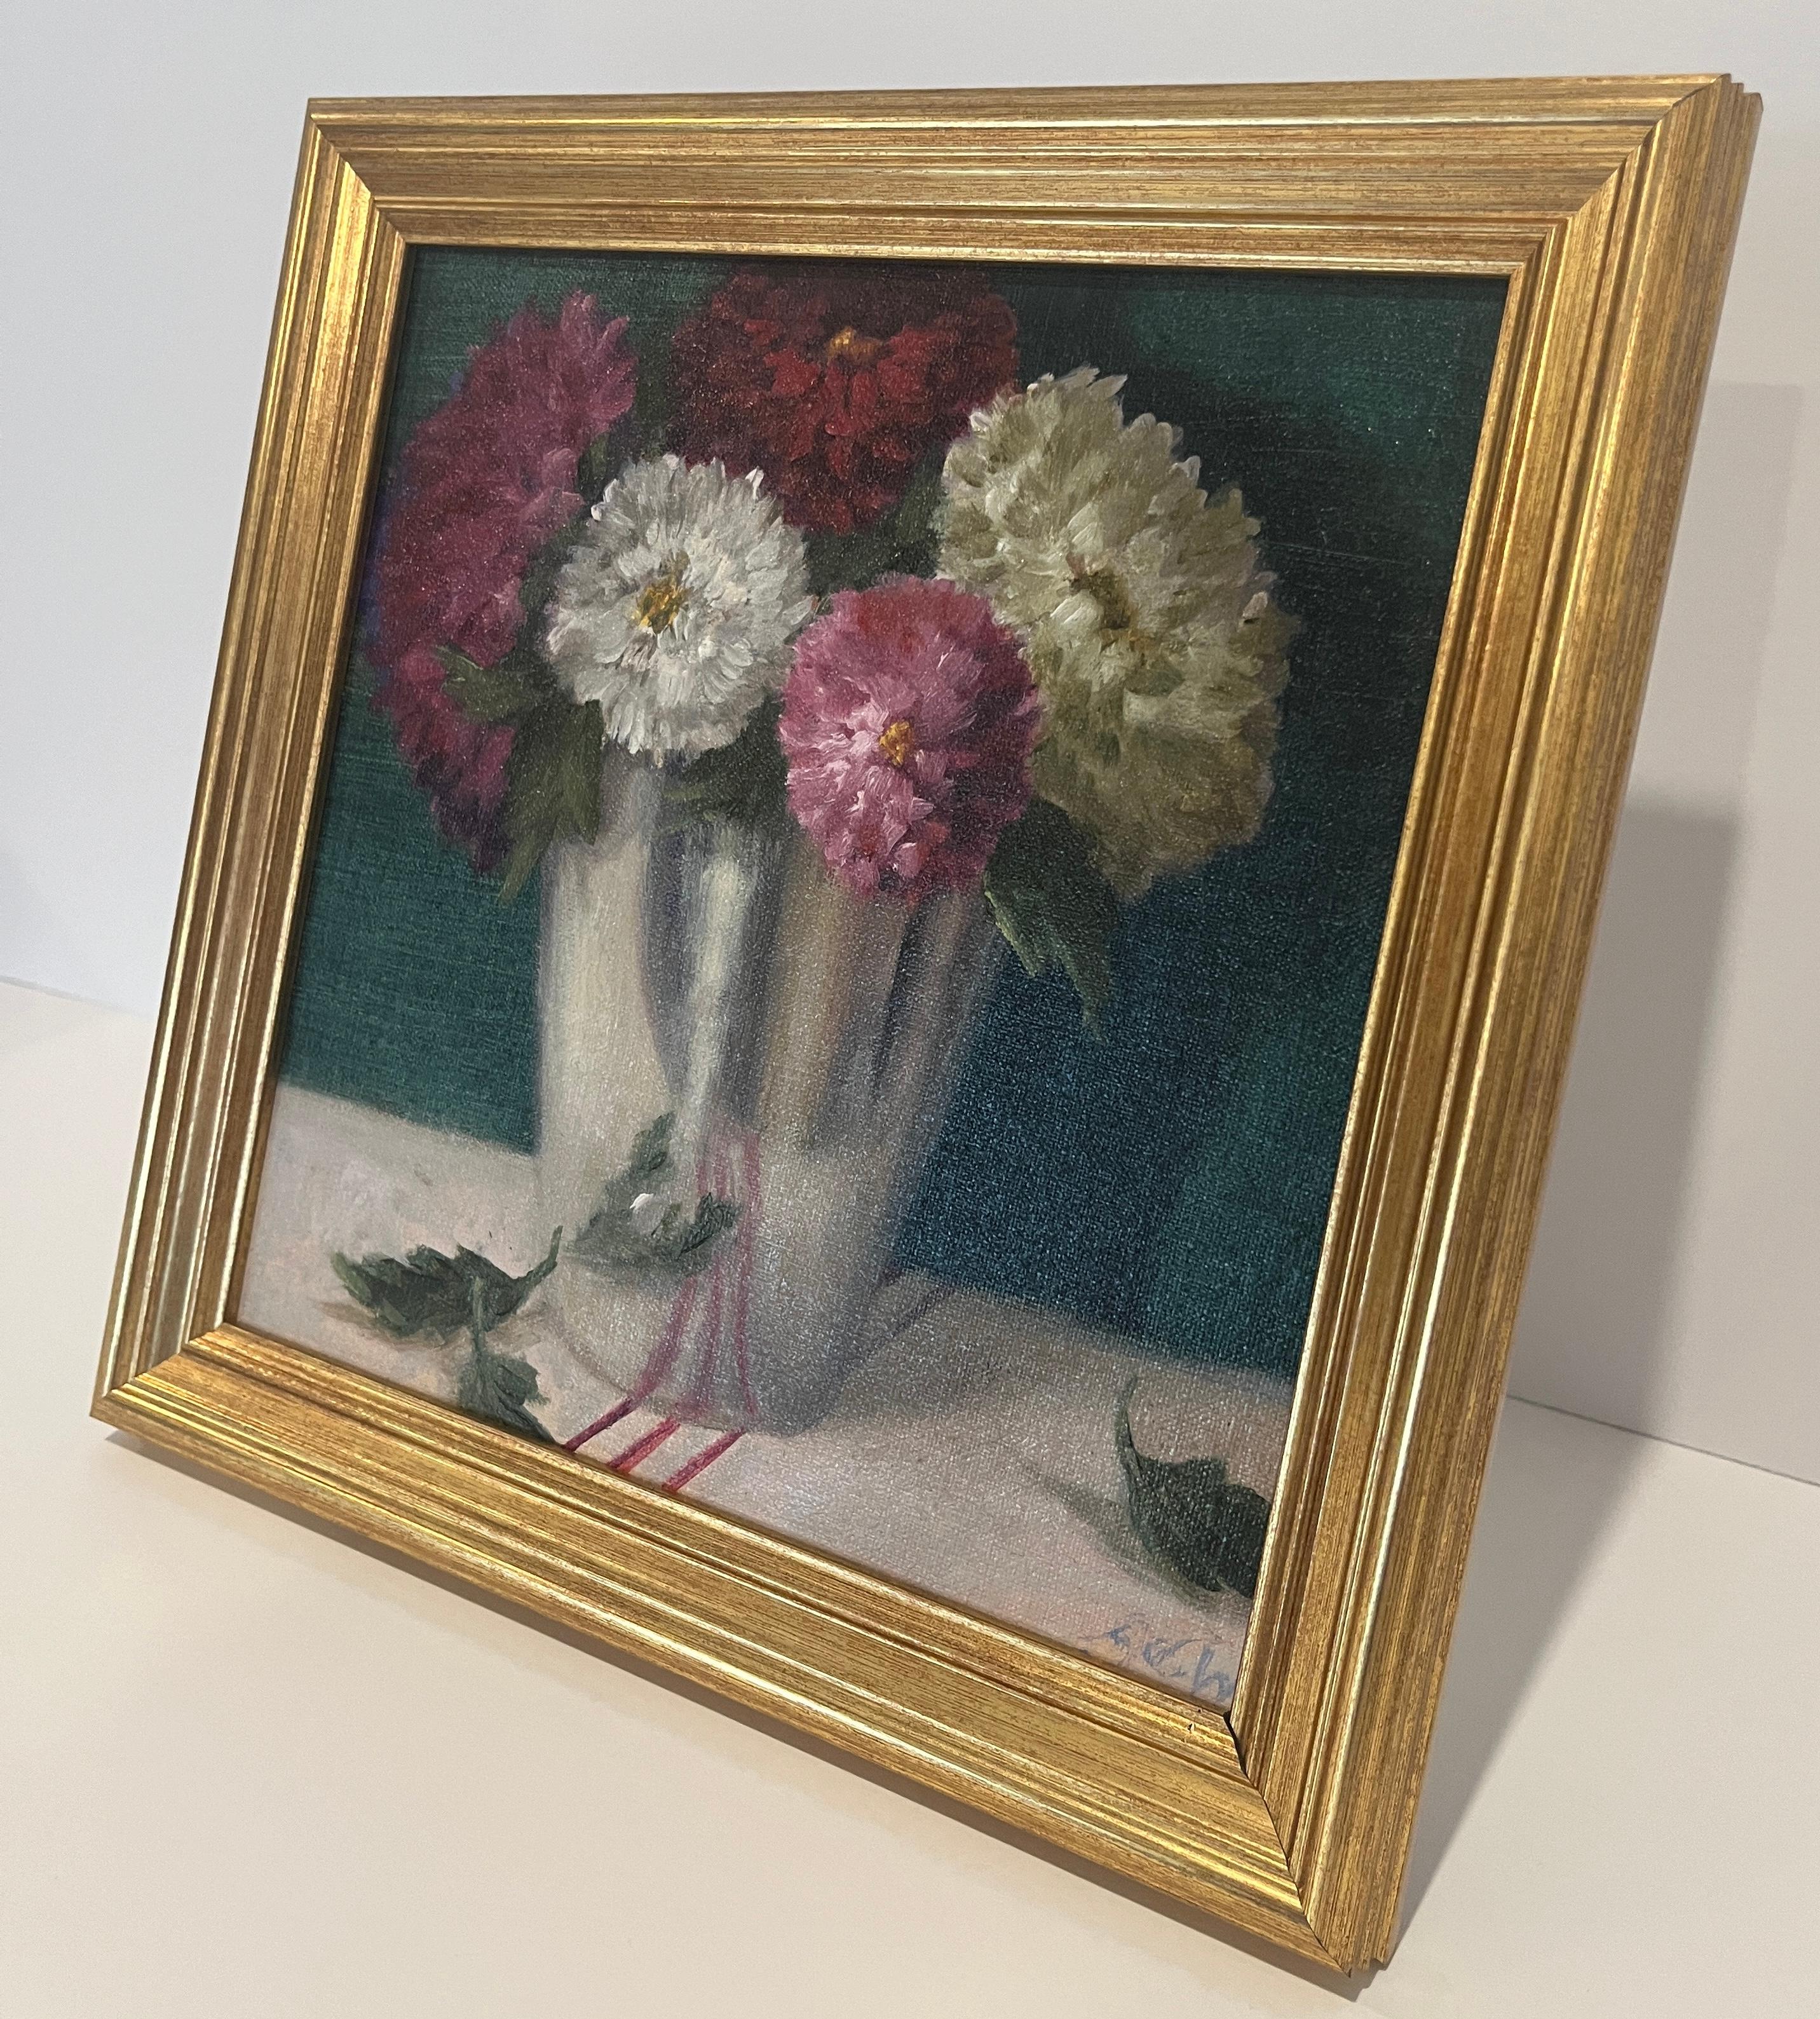 Il s'agit d'une peinture à l'huile originale sur panneau de lin. Les chrysanthèmes, la fleur traditionnelle de la Toussaint en France, sont représentés dans une coupe argentée réfléchissante. Un fond vert-bleu profond, semblable à un bijou, ajoute